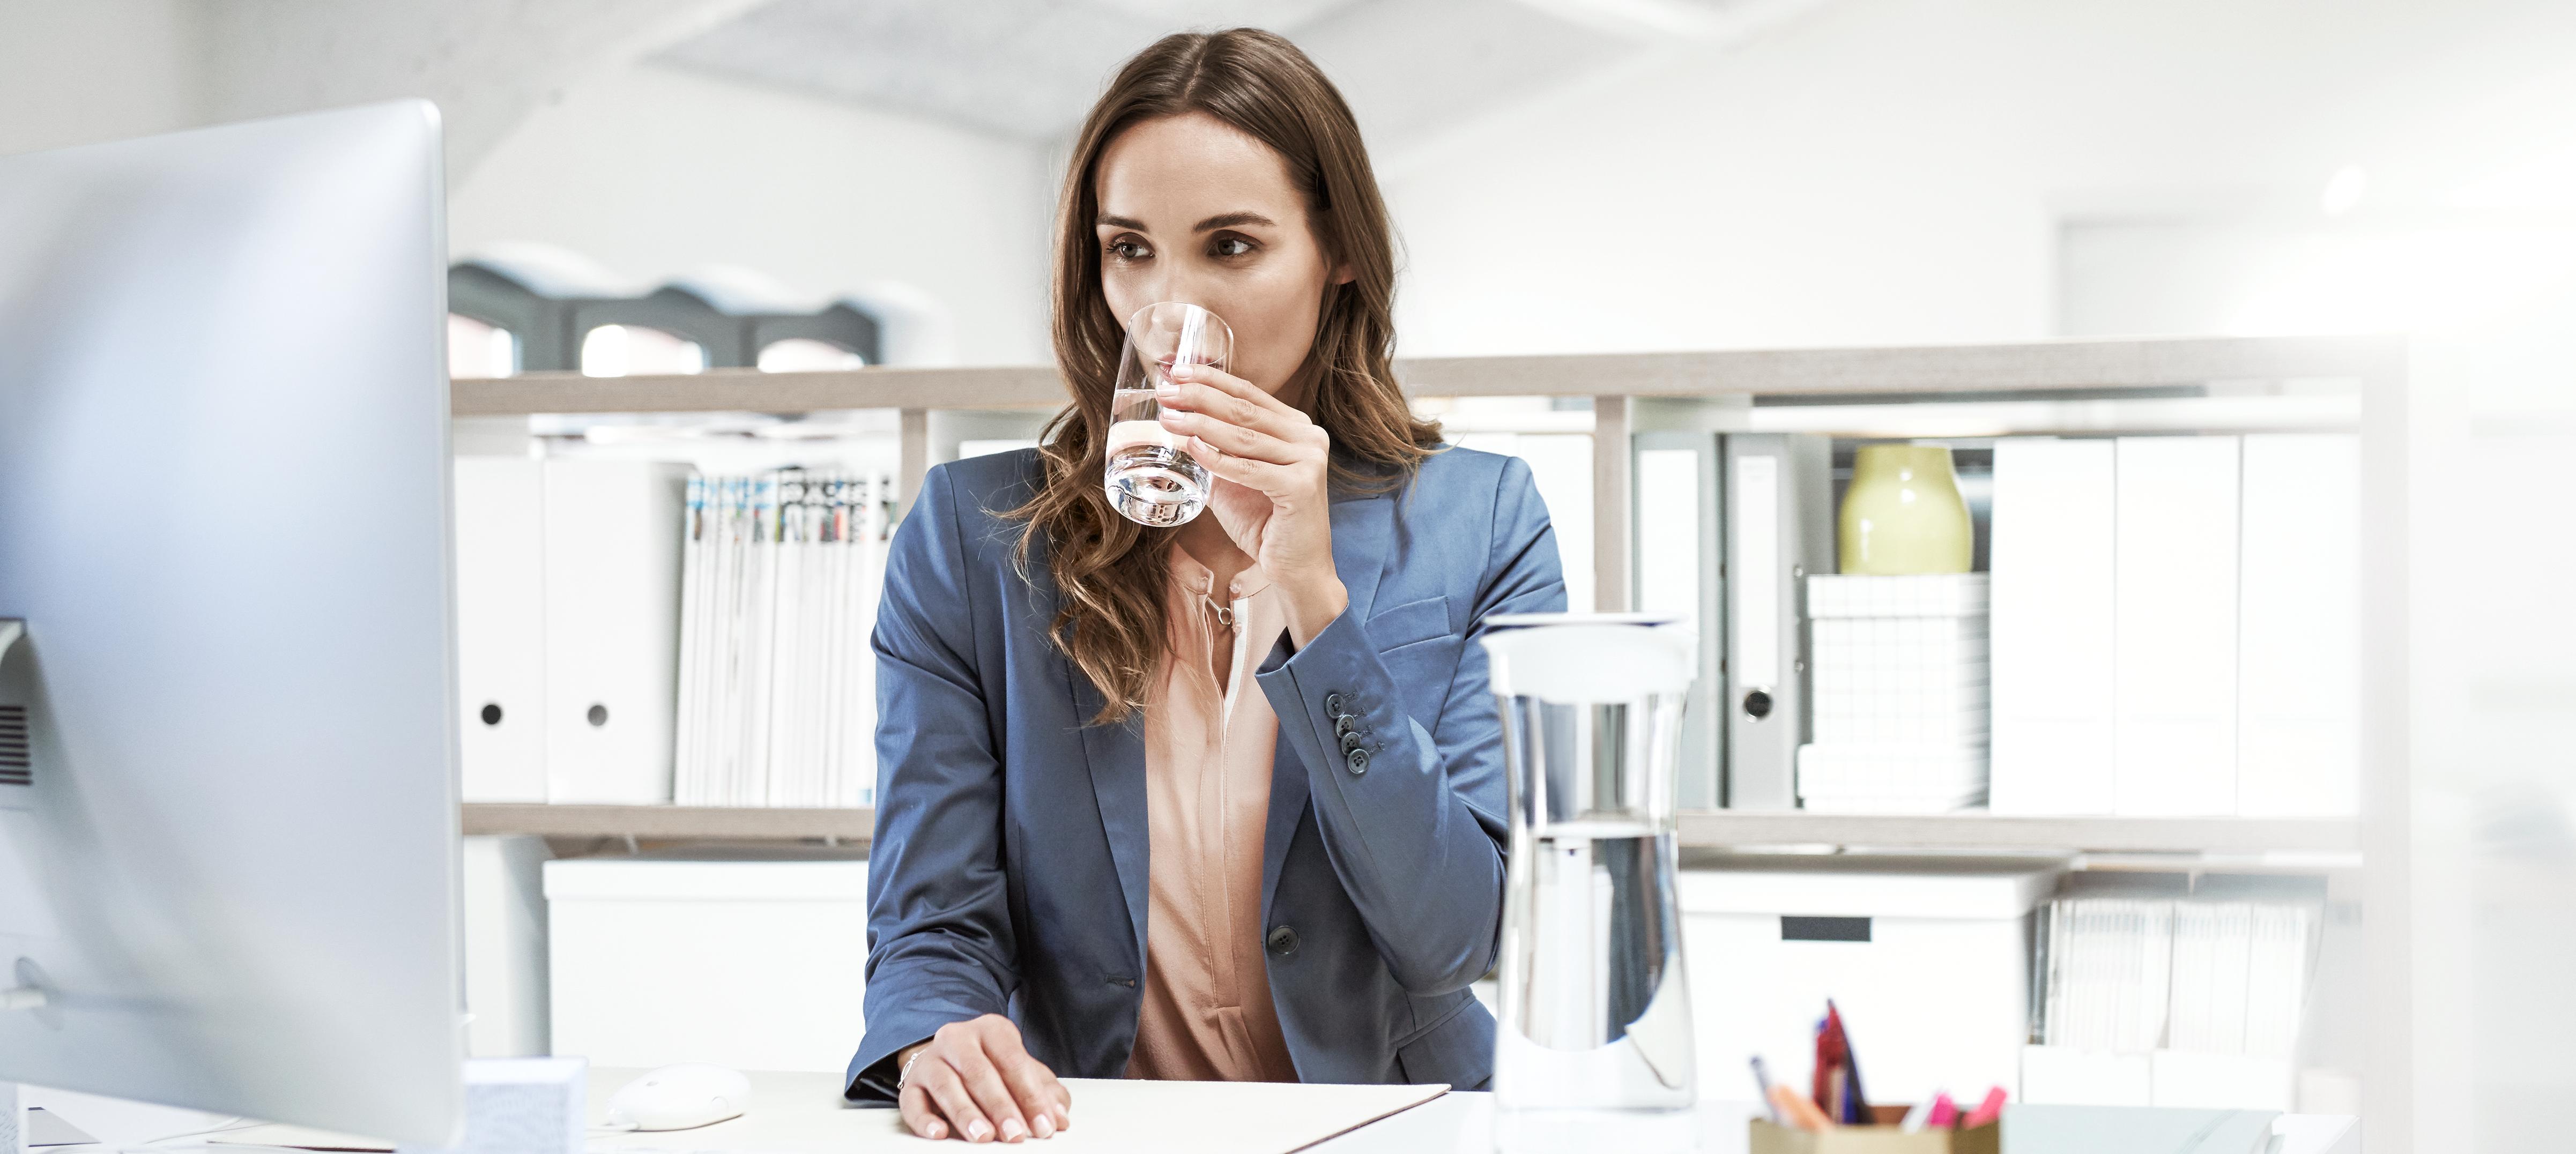 Kobieta pracująca w biurze, pijąca wodę ze szklanki podczas obowiązków służbowych.